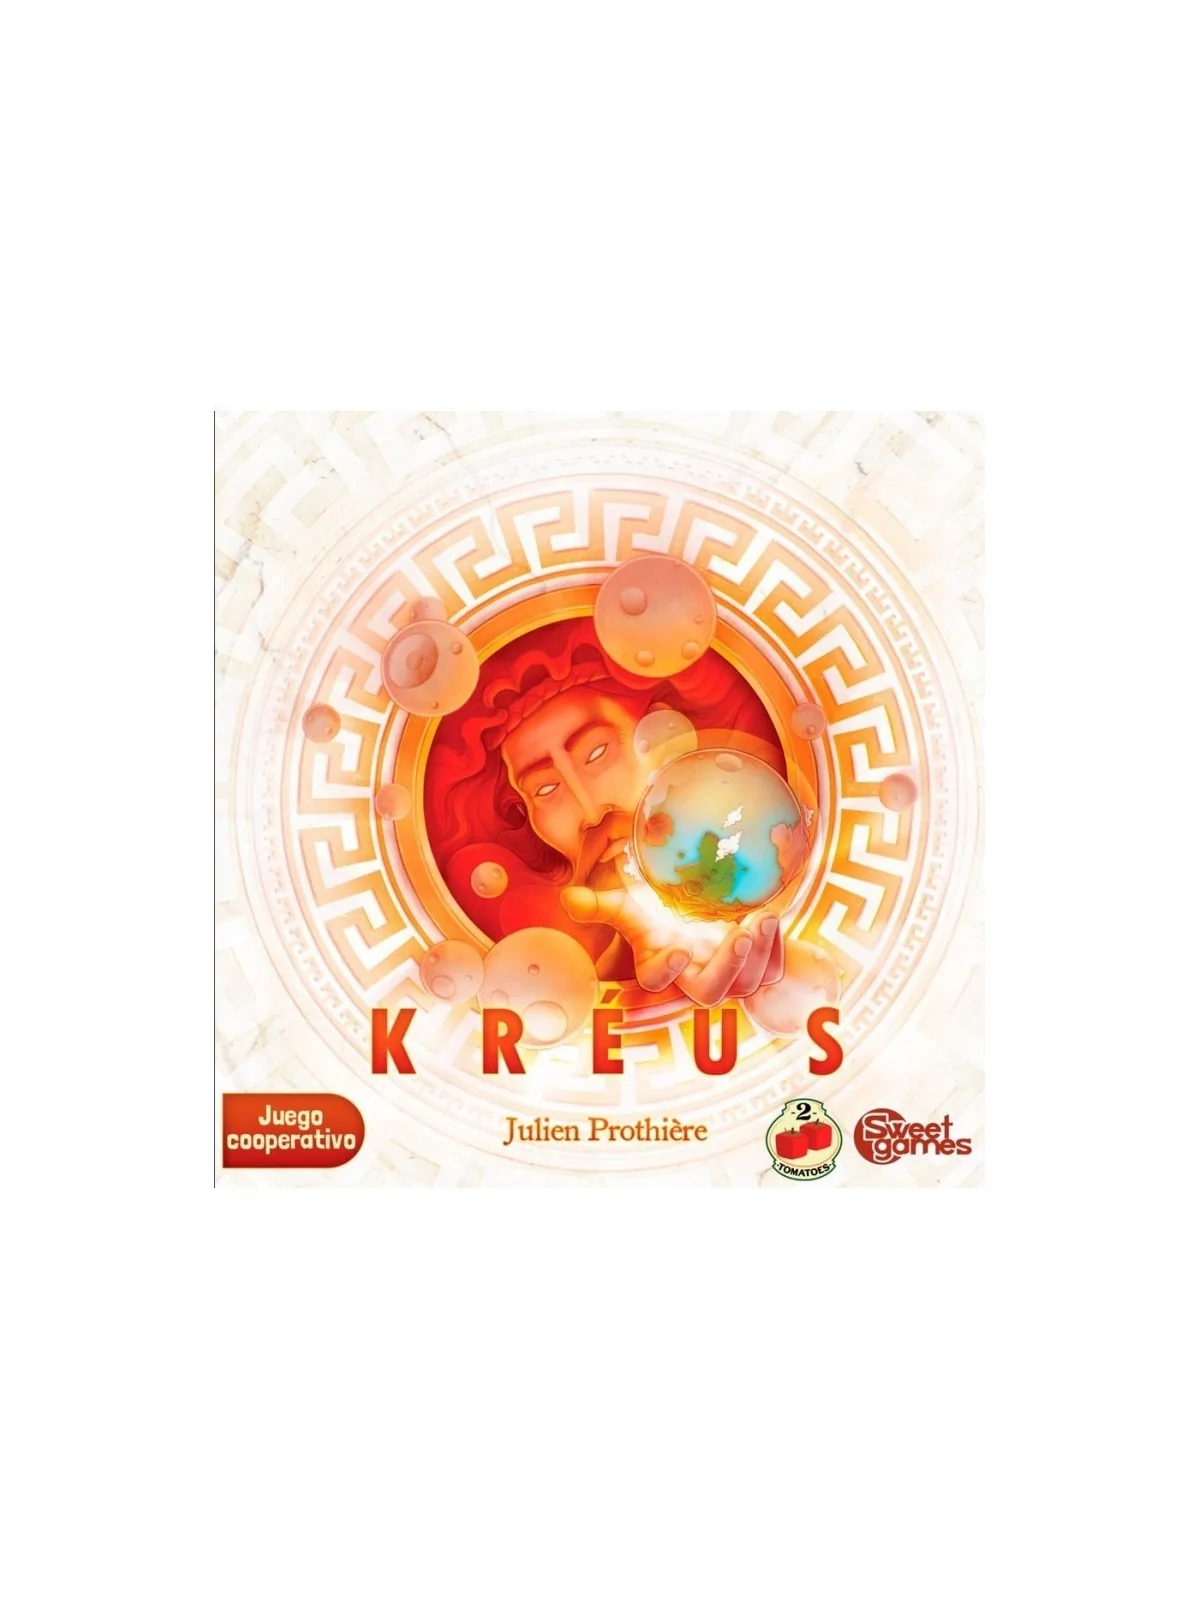 Comprar Kréus barato al mejor precio 19,75 € de Two Tomatoes